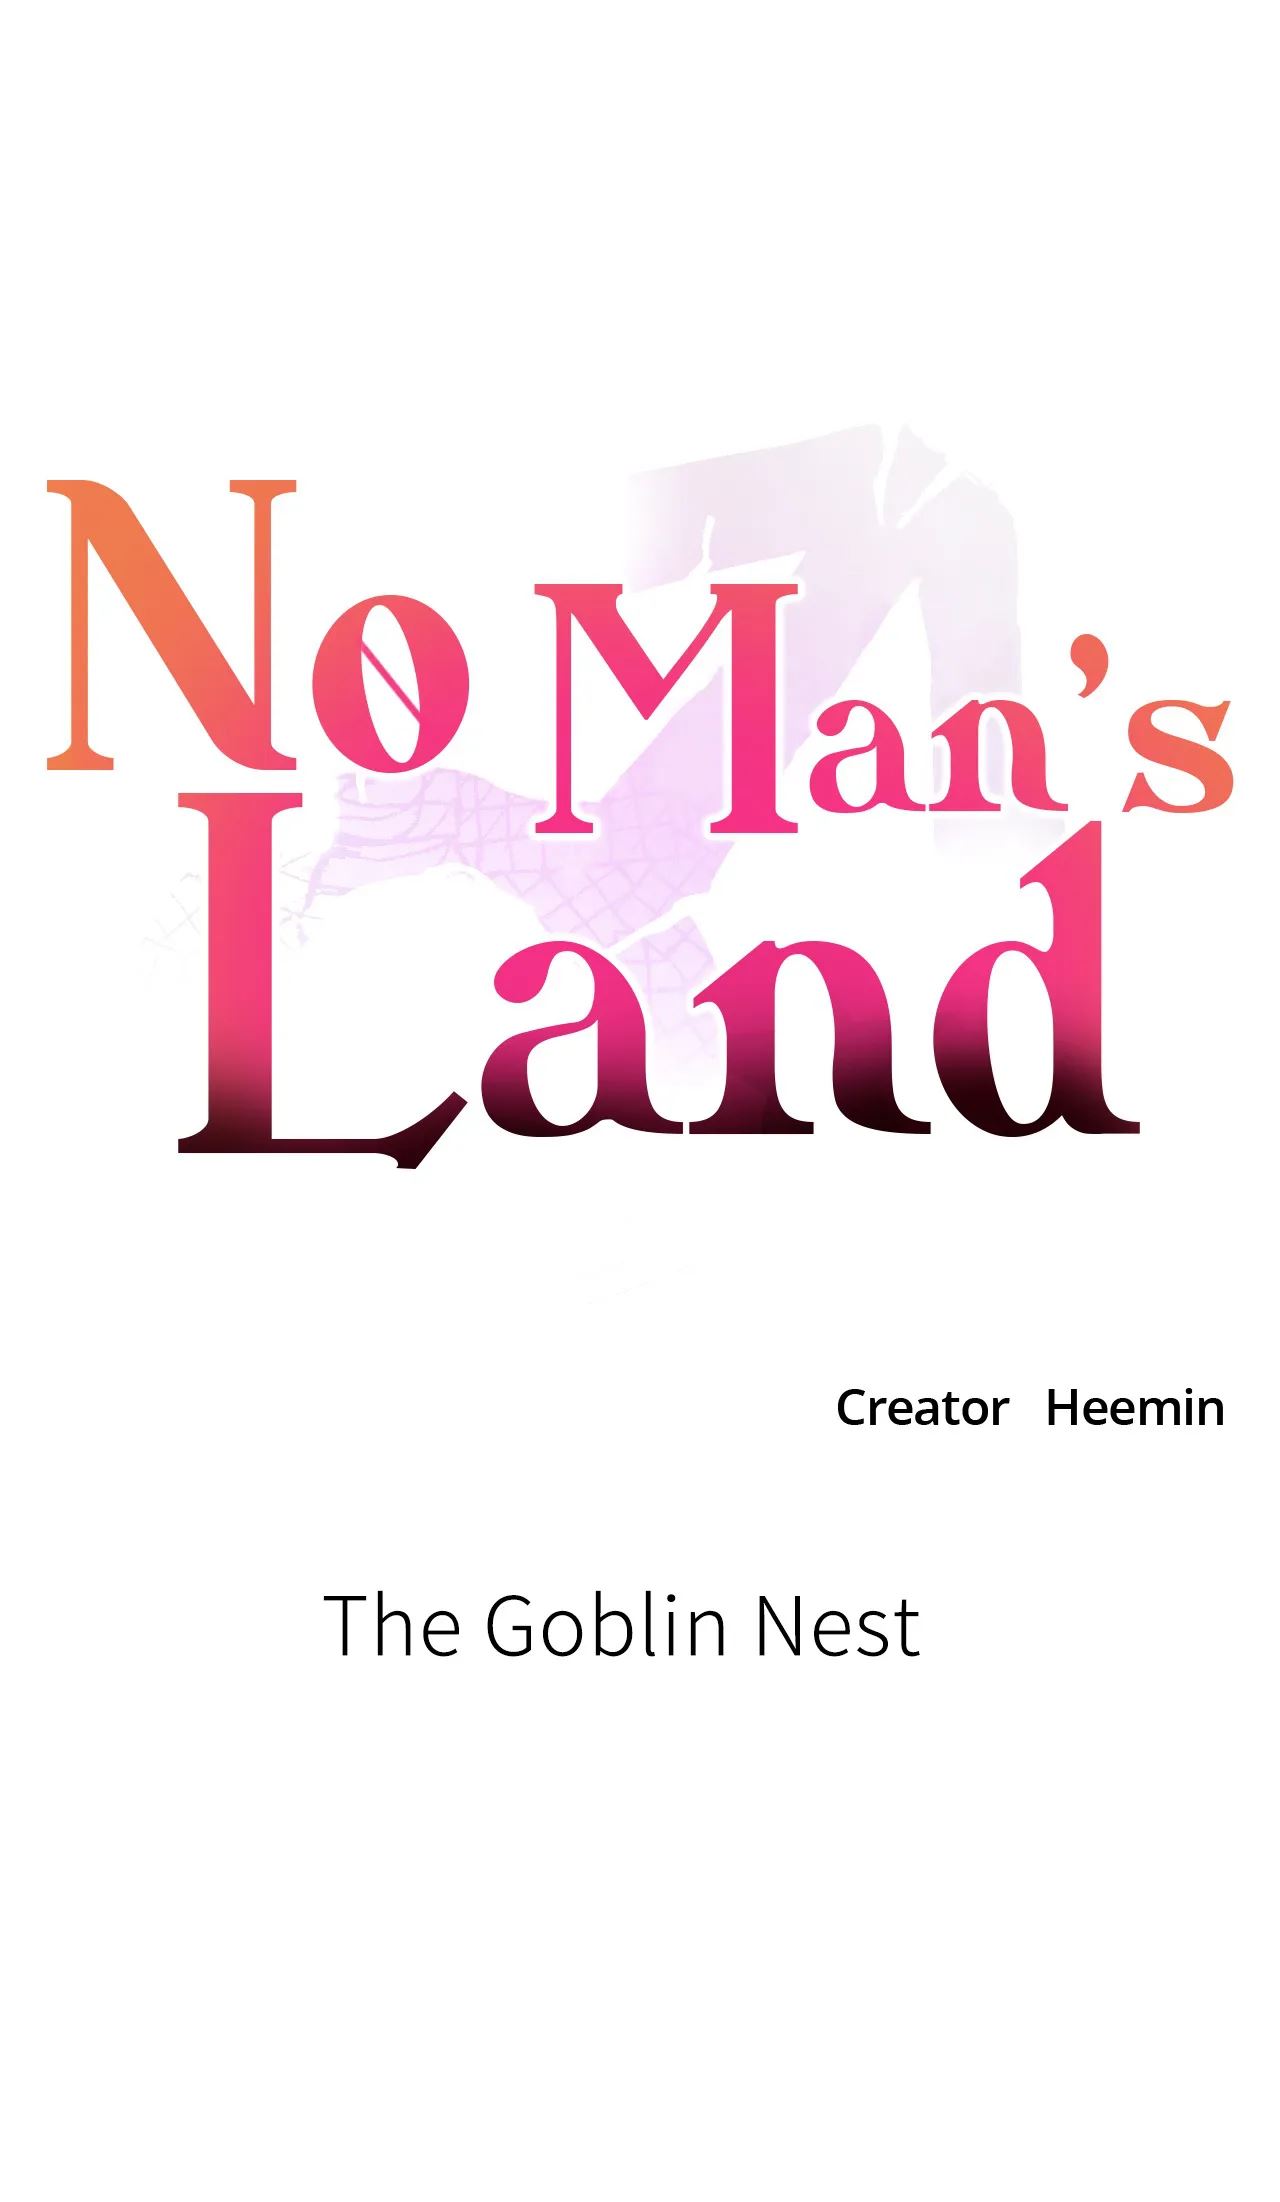 No Man’s Land NEW image